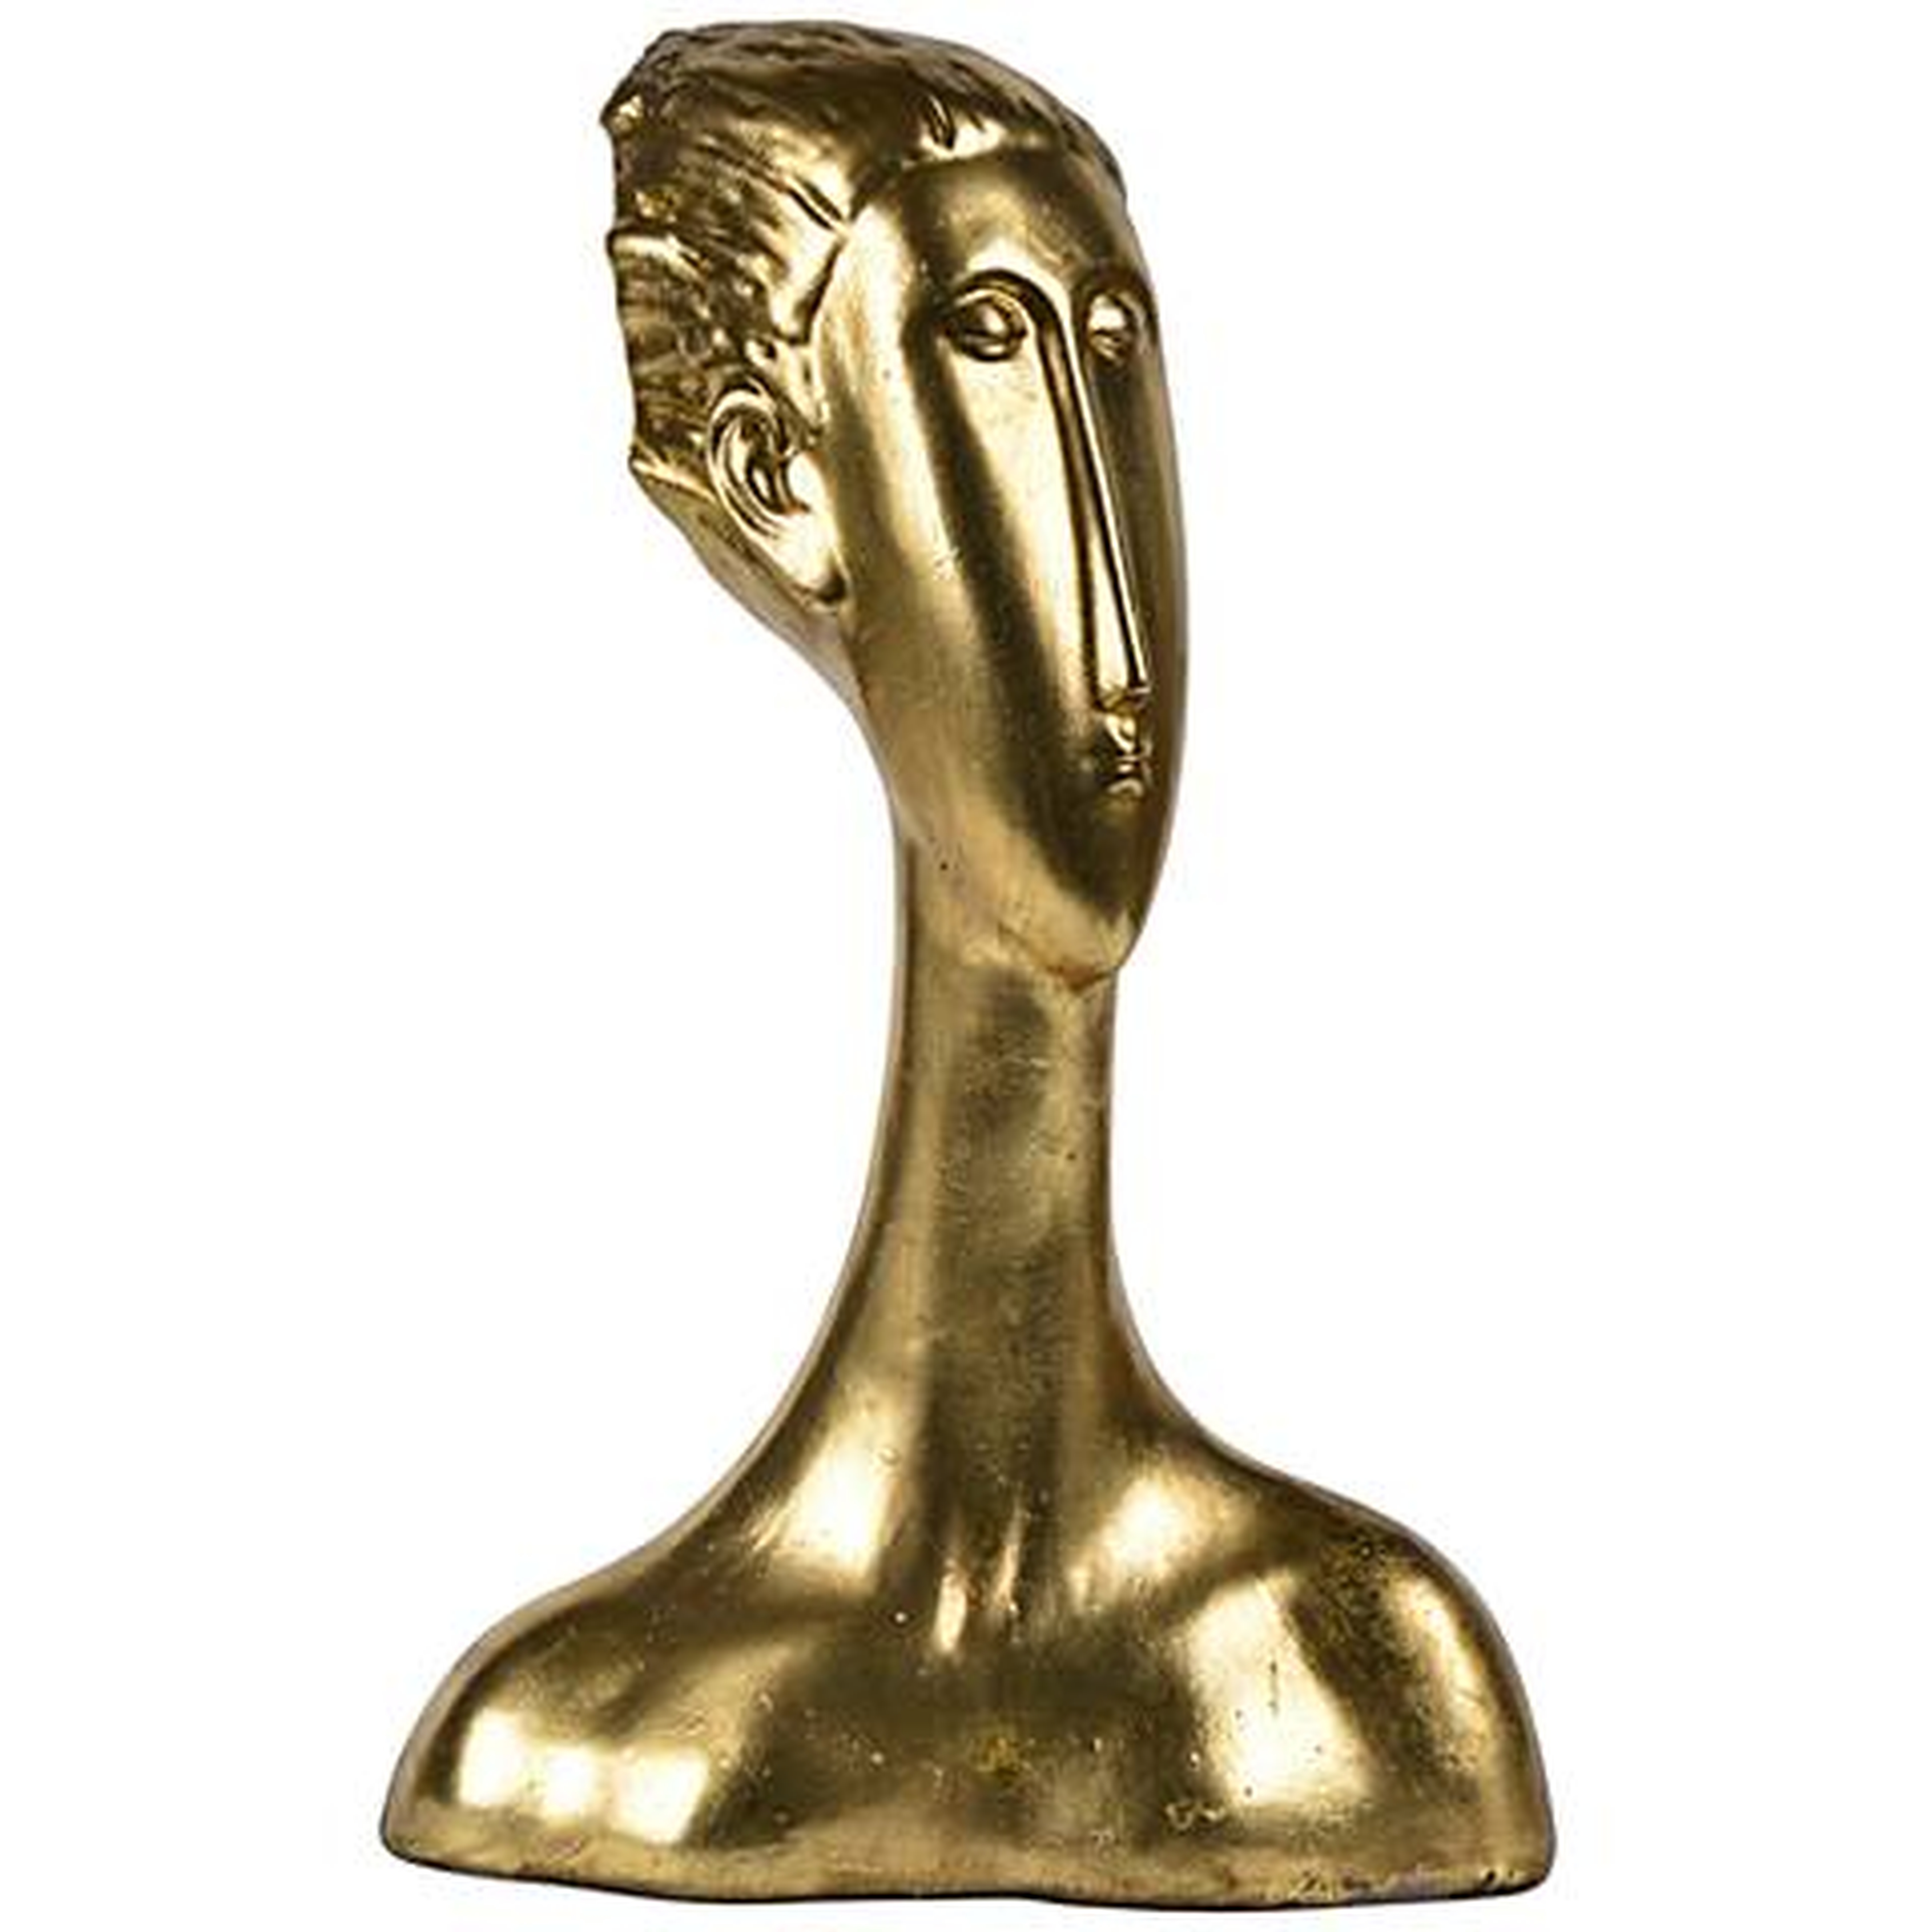 Drost 15" High Antique Gold Decorative Statue - Lamps Plus